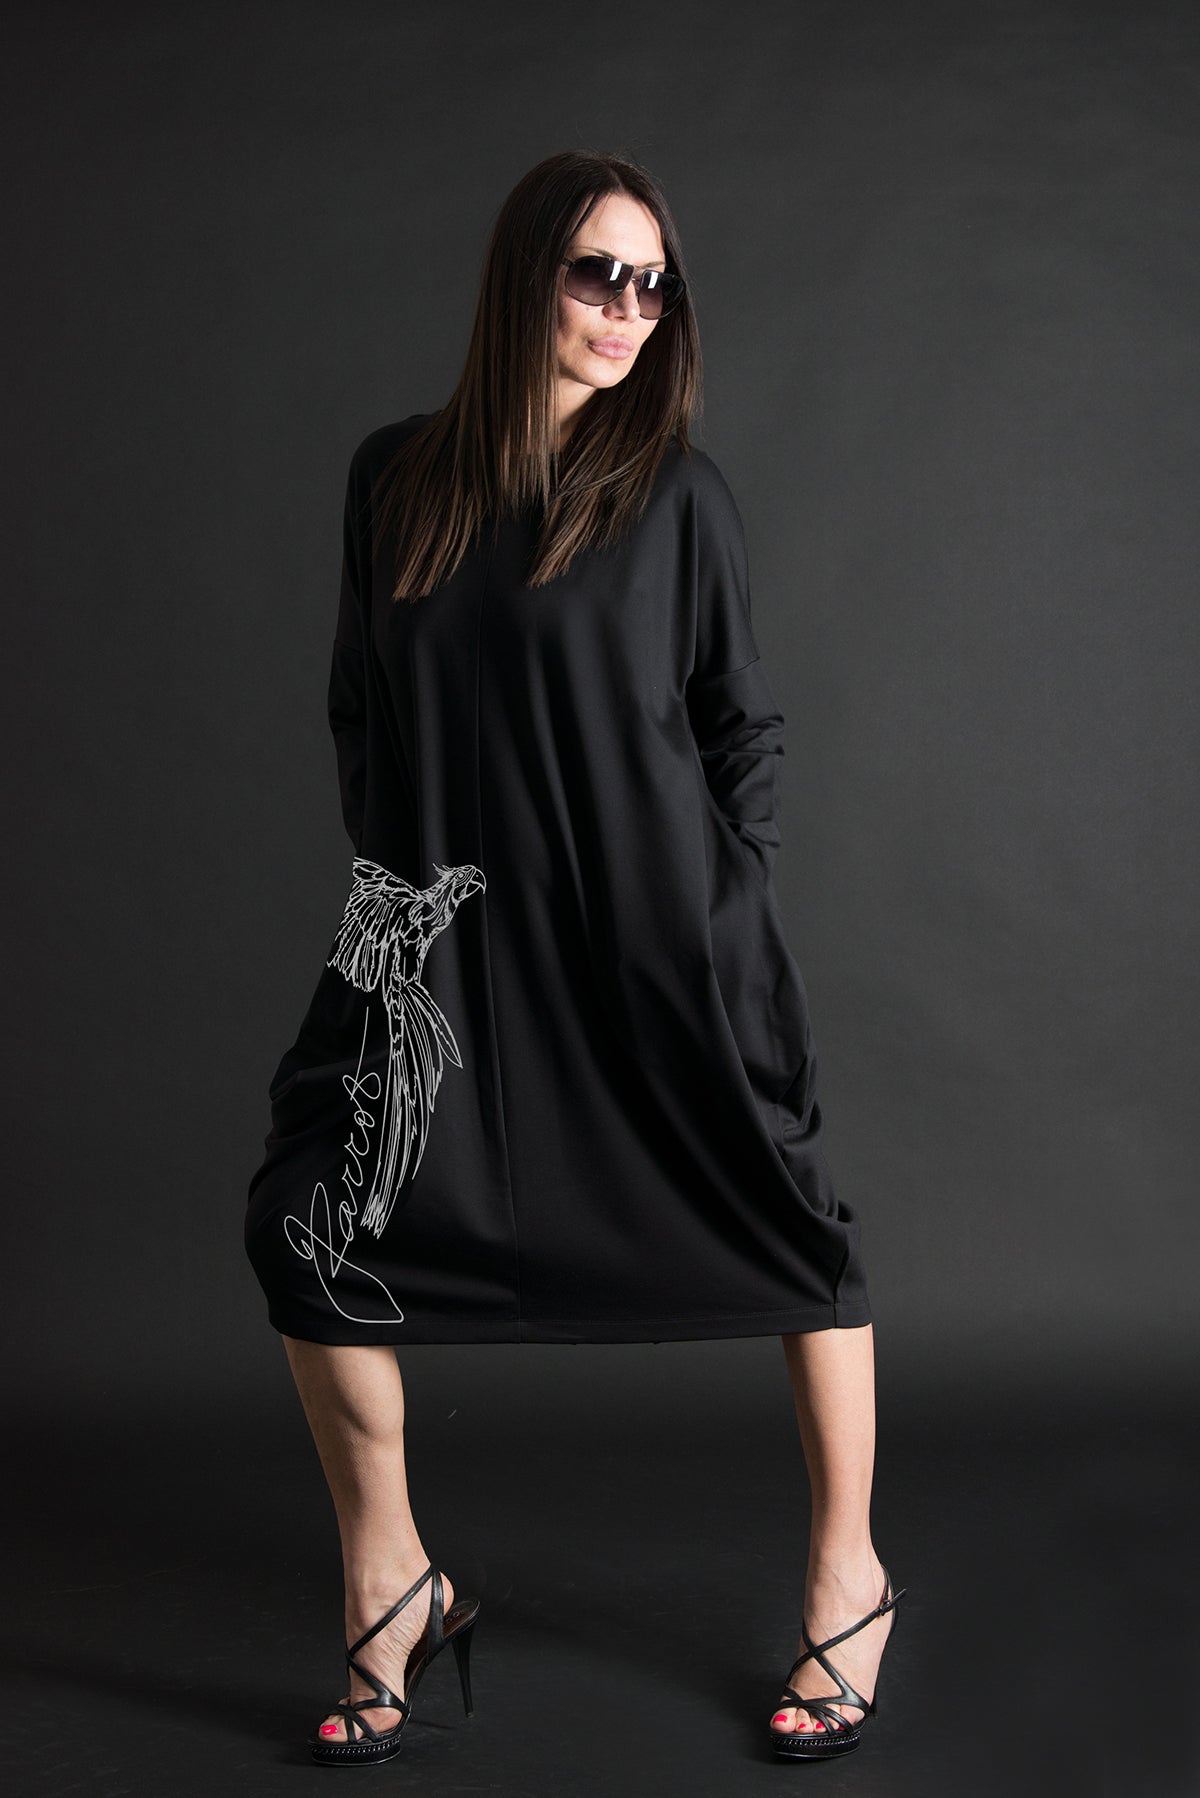 Autumn Black Parrot Print Long Cotton Dress, Dresses & Maxi Dresses